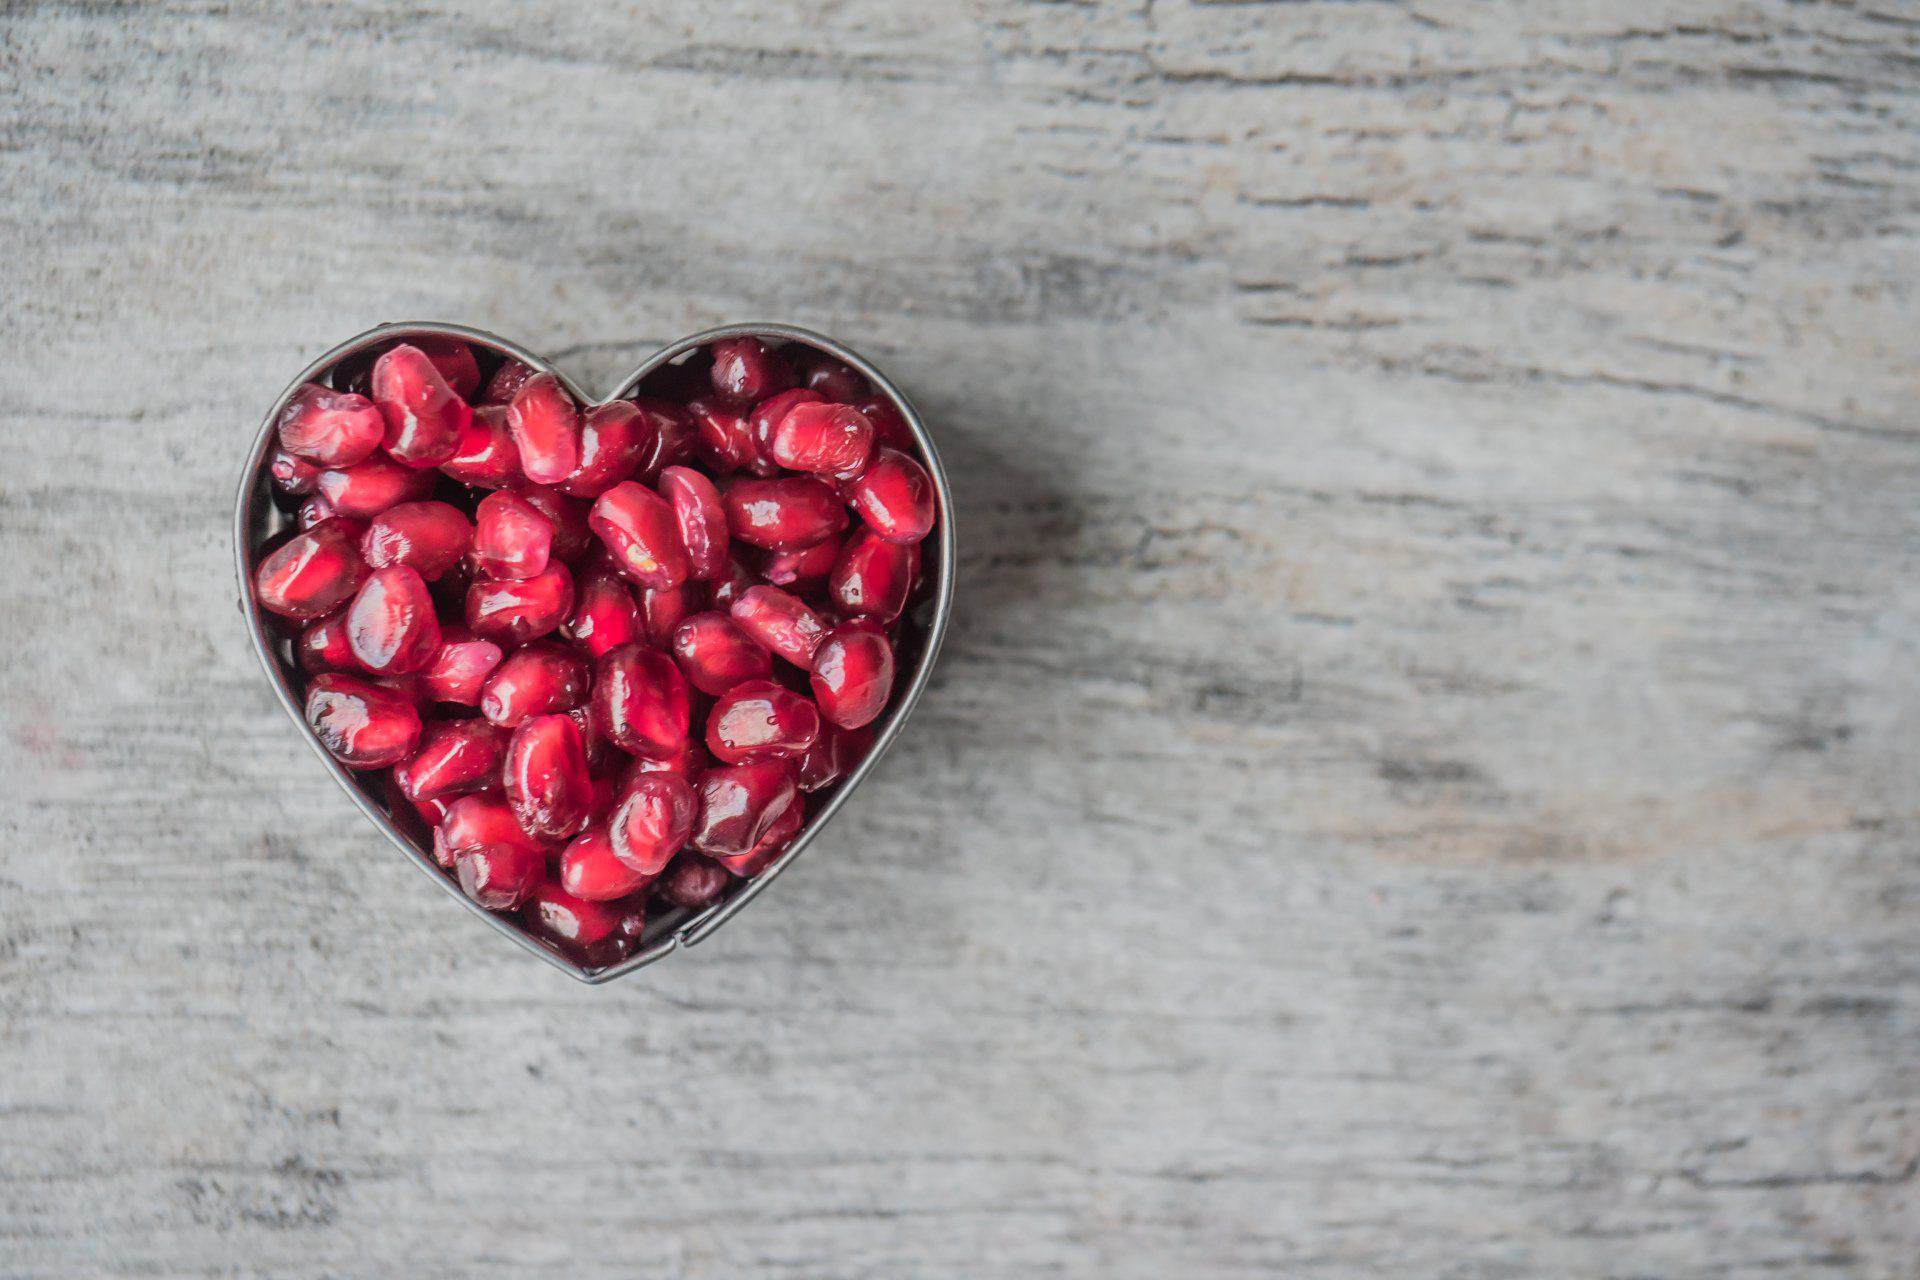 Pomegranate seeds - a women's wellness ingredient.